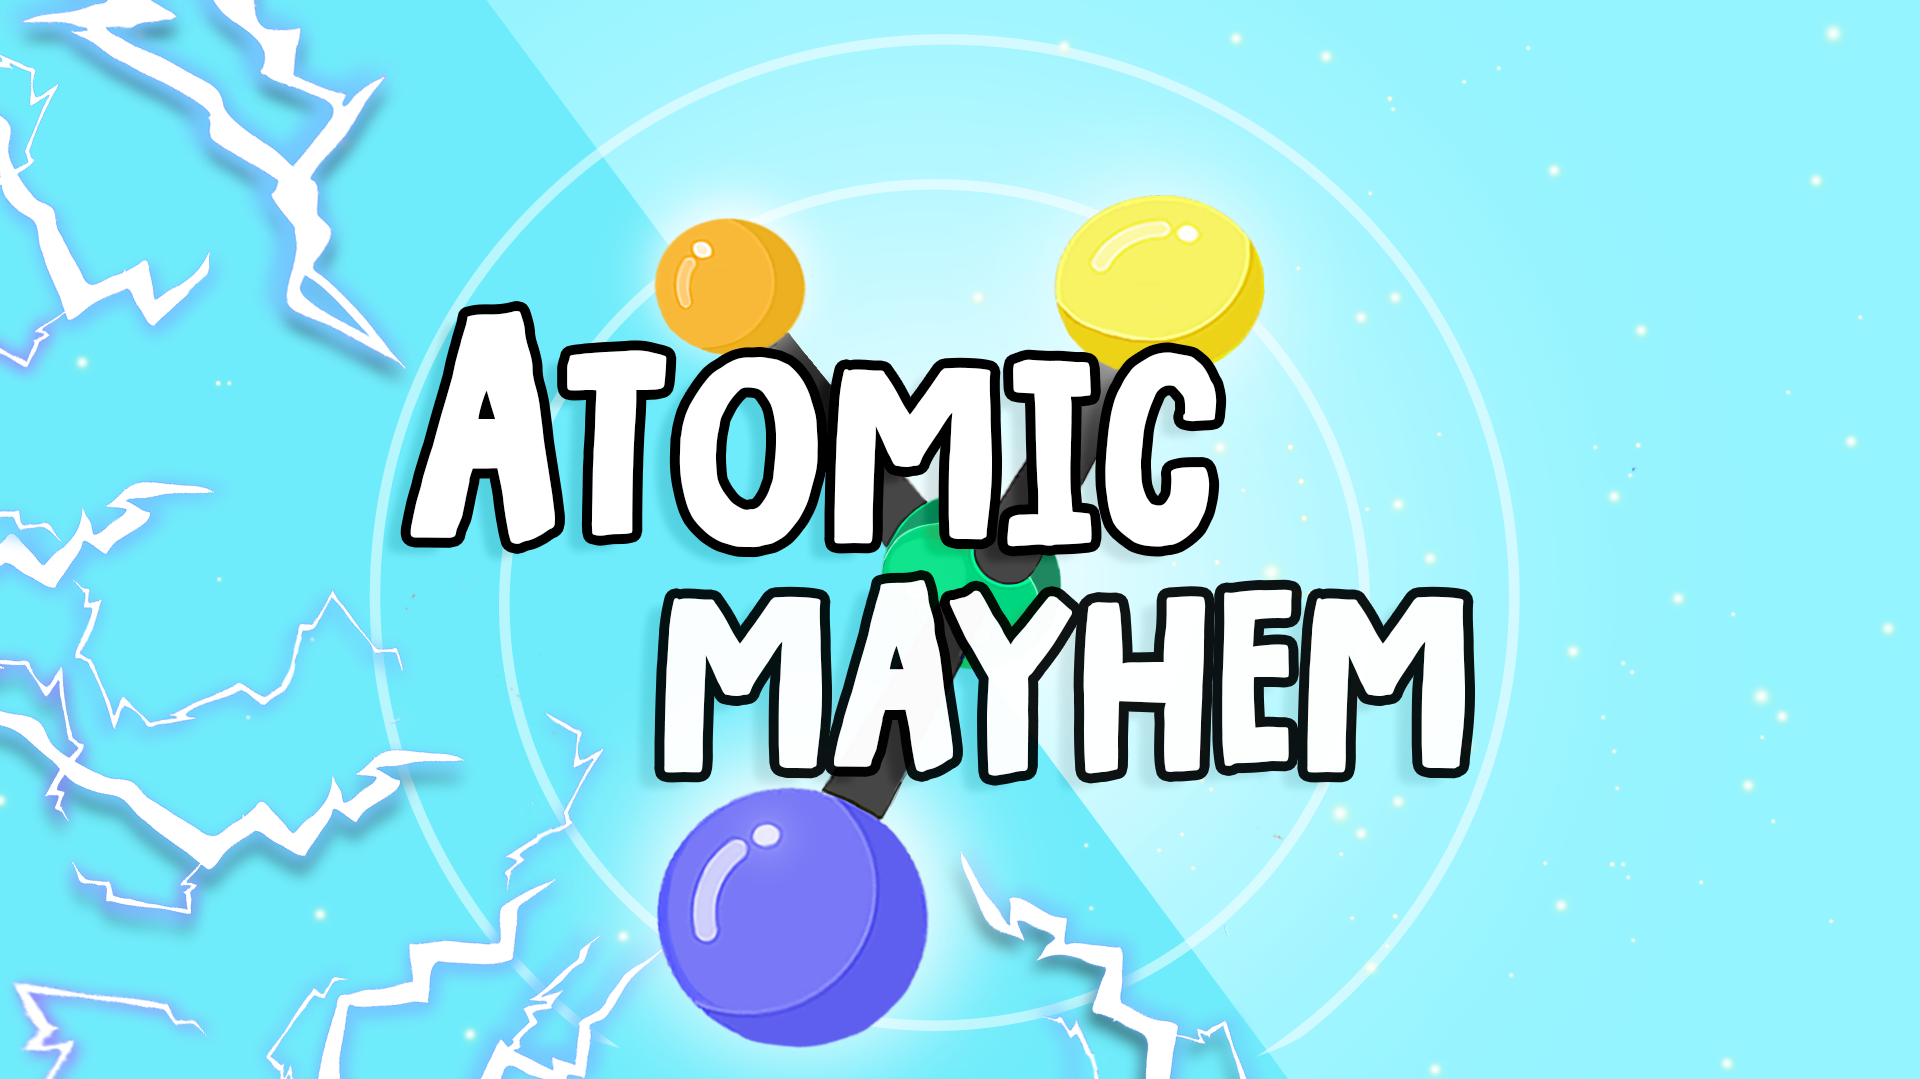 Atomic Mayhem